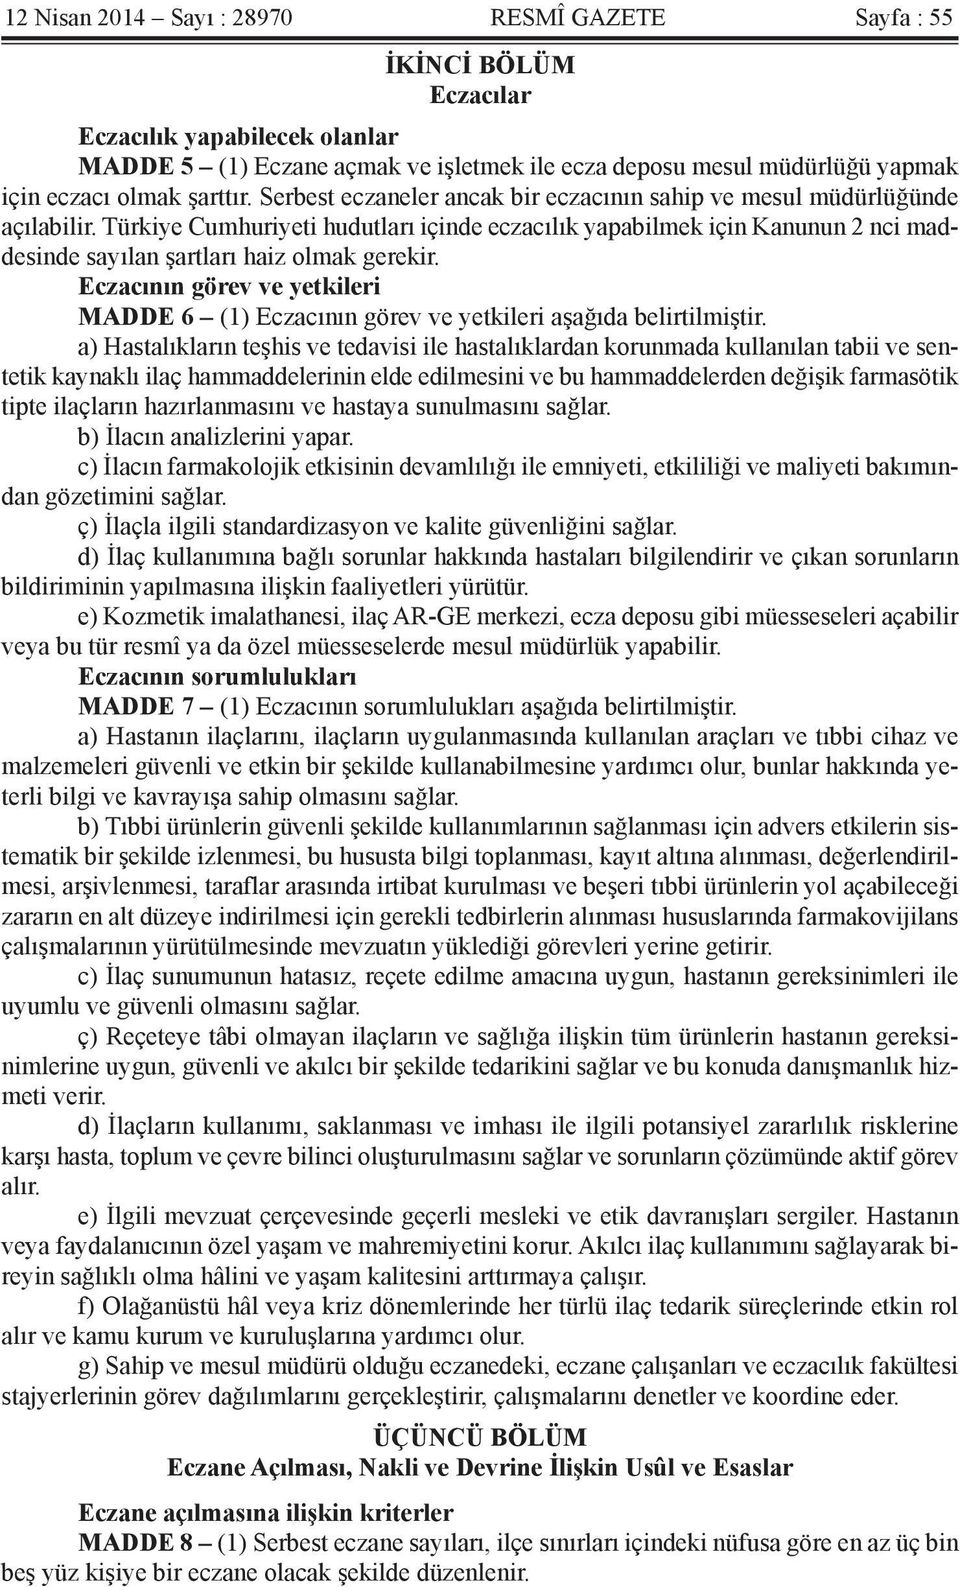 Türkiye Cumhuriyeti hudutları içinde eczacılık yapabilmek için Kanunun 2 nci maddesinde sayılan şartları haiz olmak gerekir.